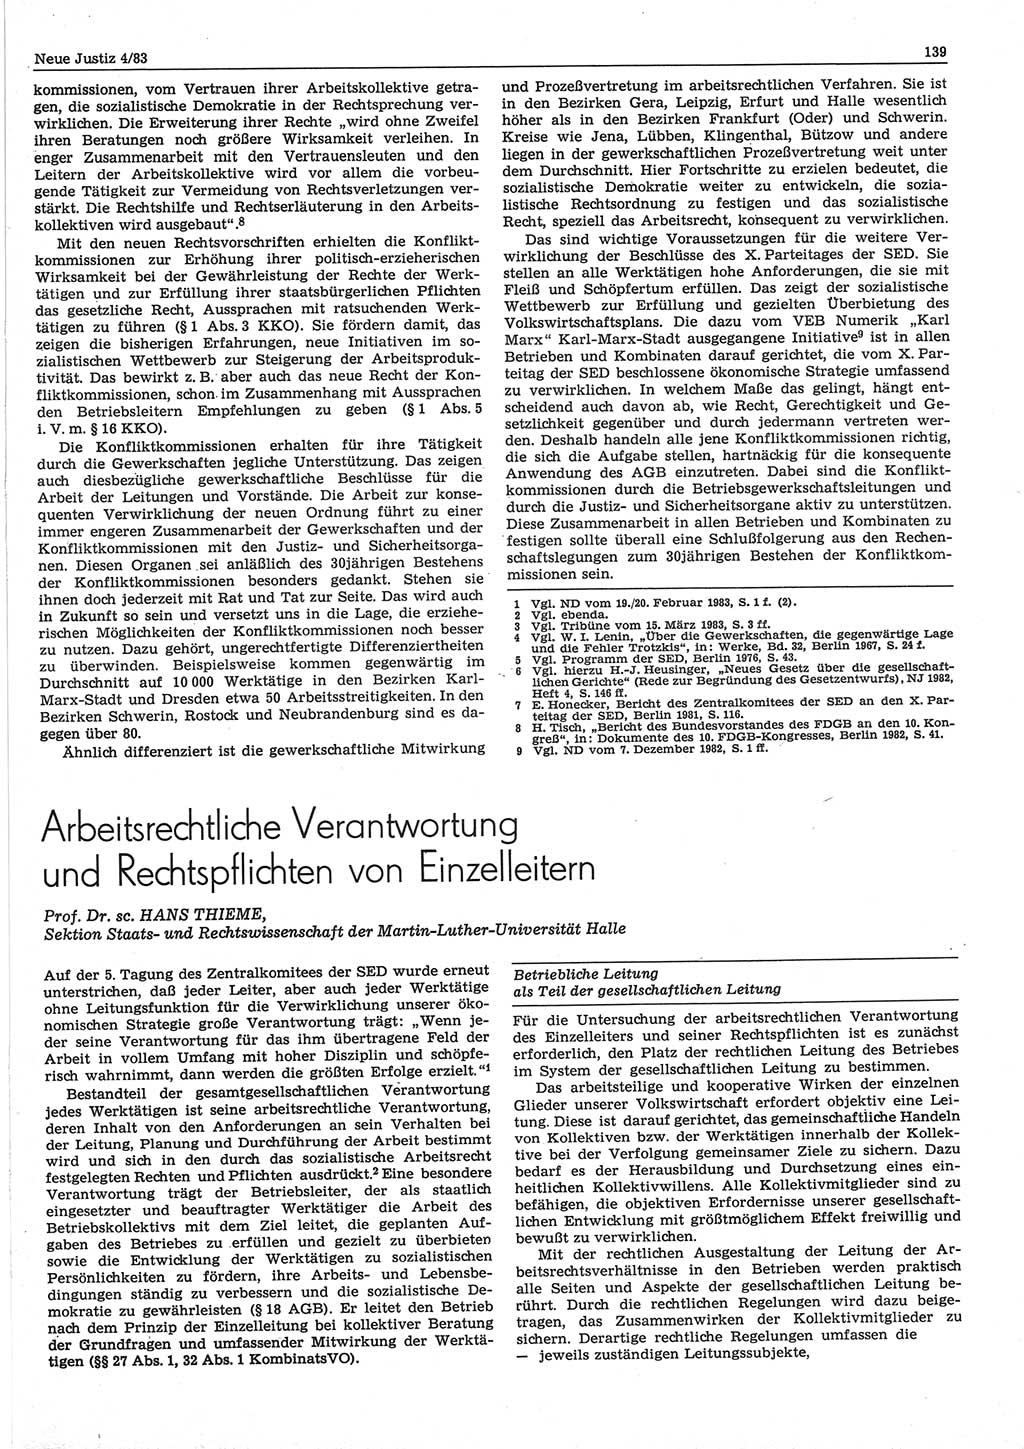 Neue Justiz (NJ), Zeitschrift für sozialistisches Recht und Gesetzlichkeit [Deutsche Demokratische Republik (DDR)], 37. Jahrgang 1983, Seite 139 (NJ DDR 1983, S. 139)